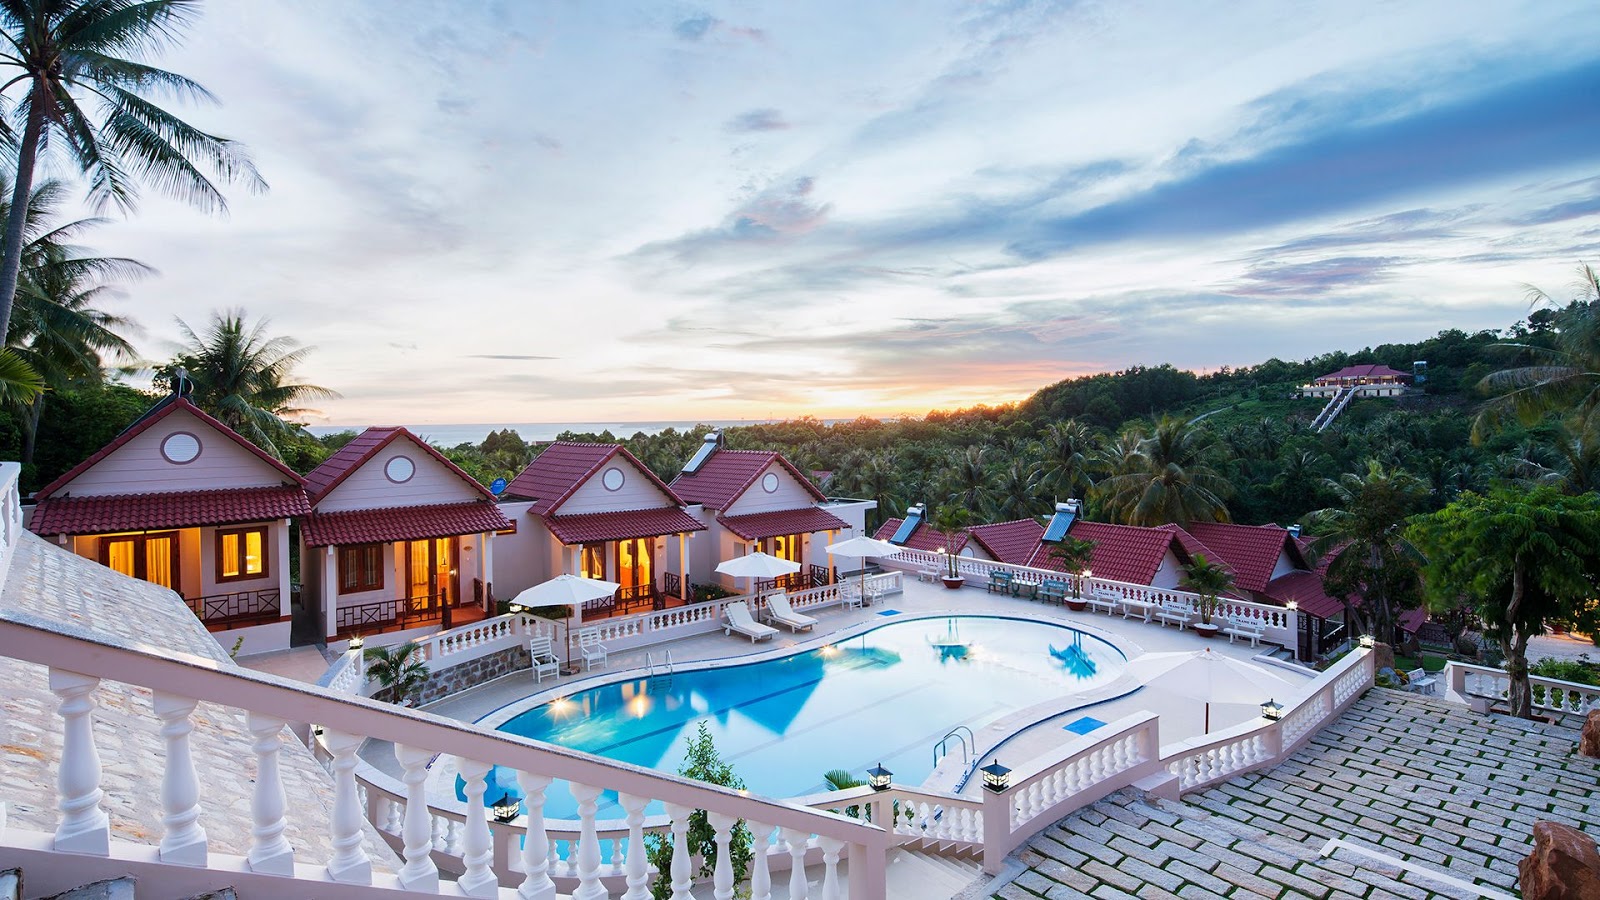 10 khách sạn 3 sao Phú Quốc giá rẻ, đẹp gần biển nên đặt phòng